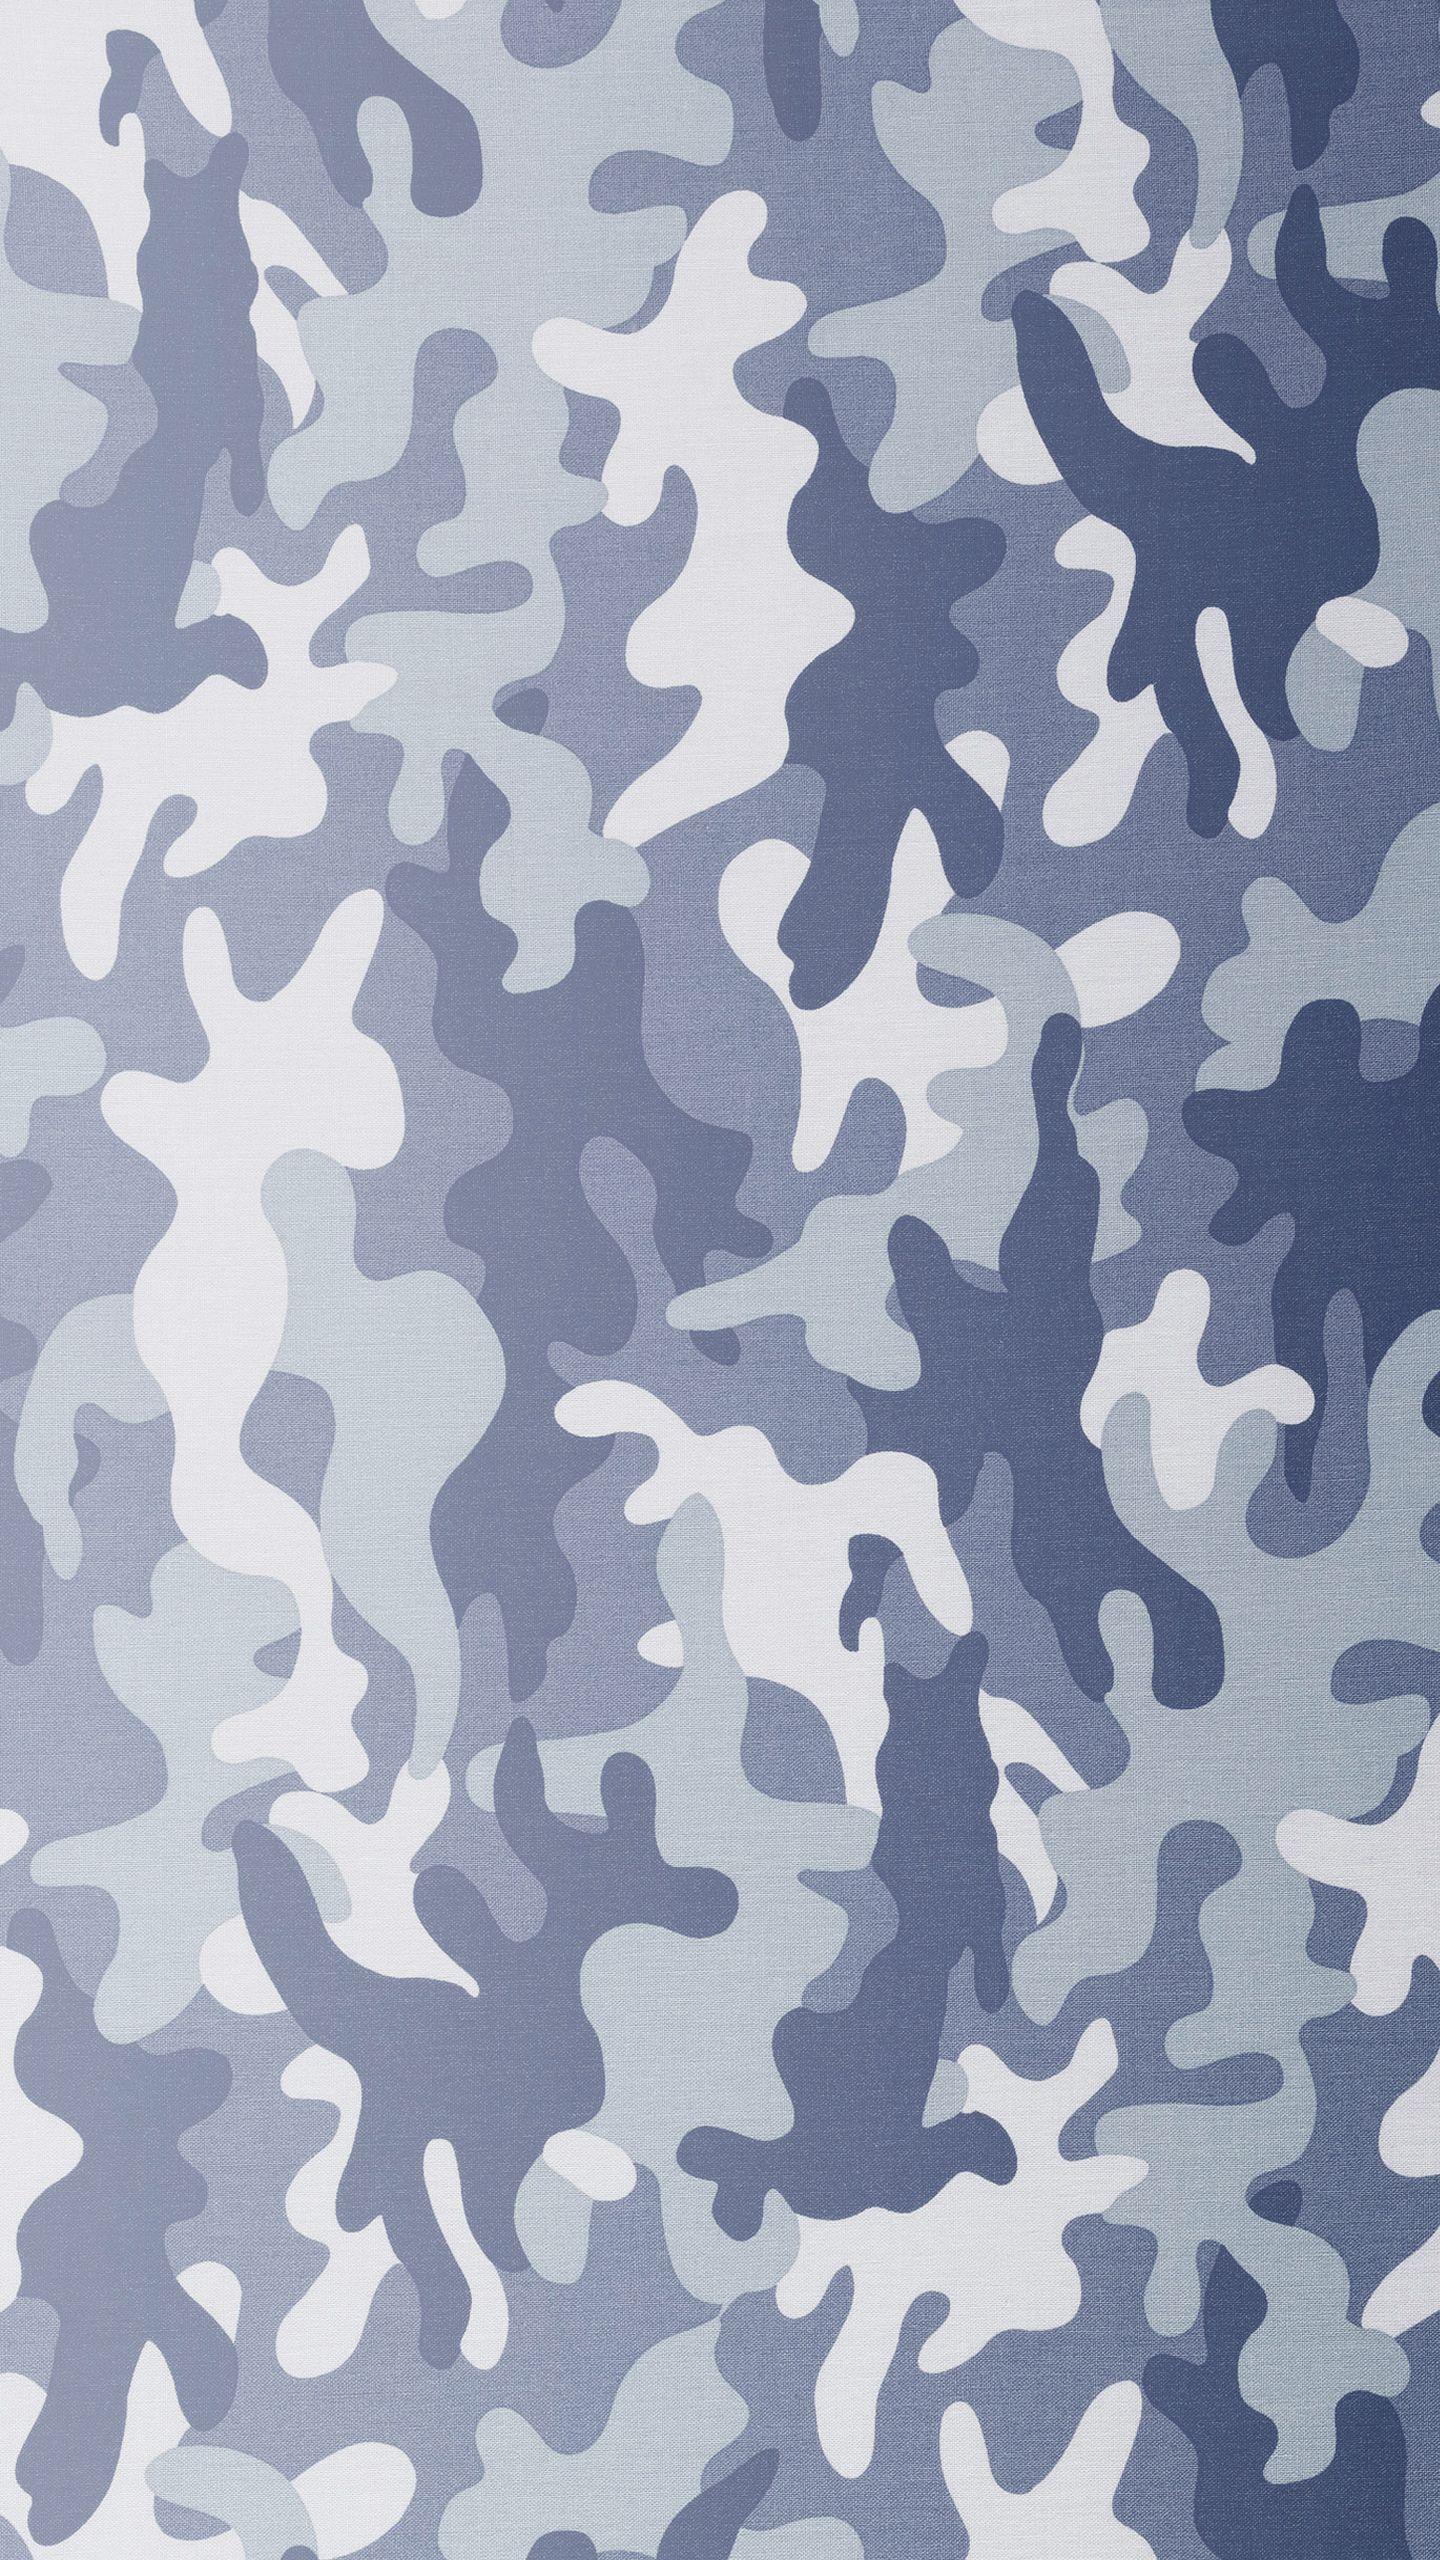 Grey Camo Wallpaper, Image Collection of Grey Camo. nQPZ64